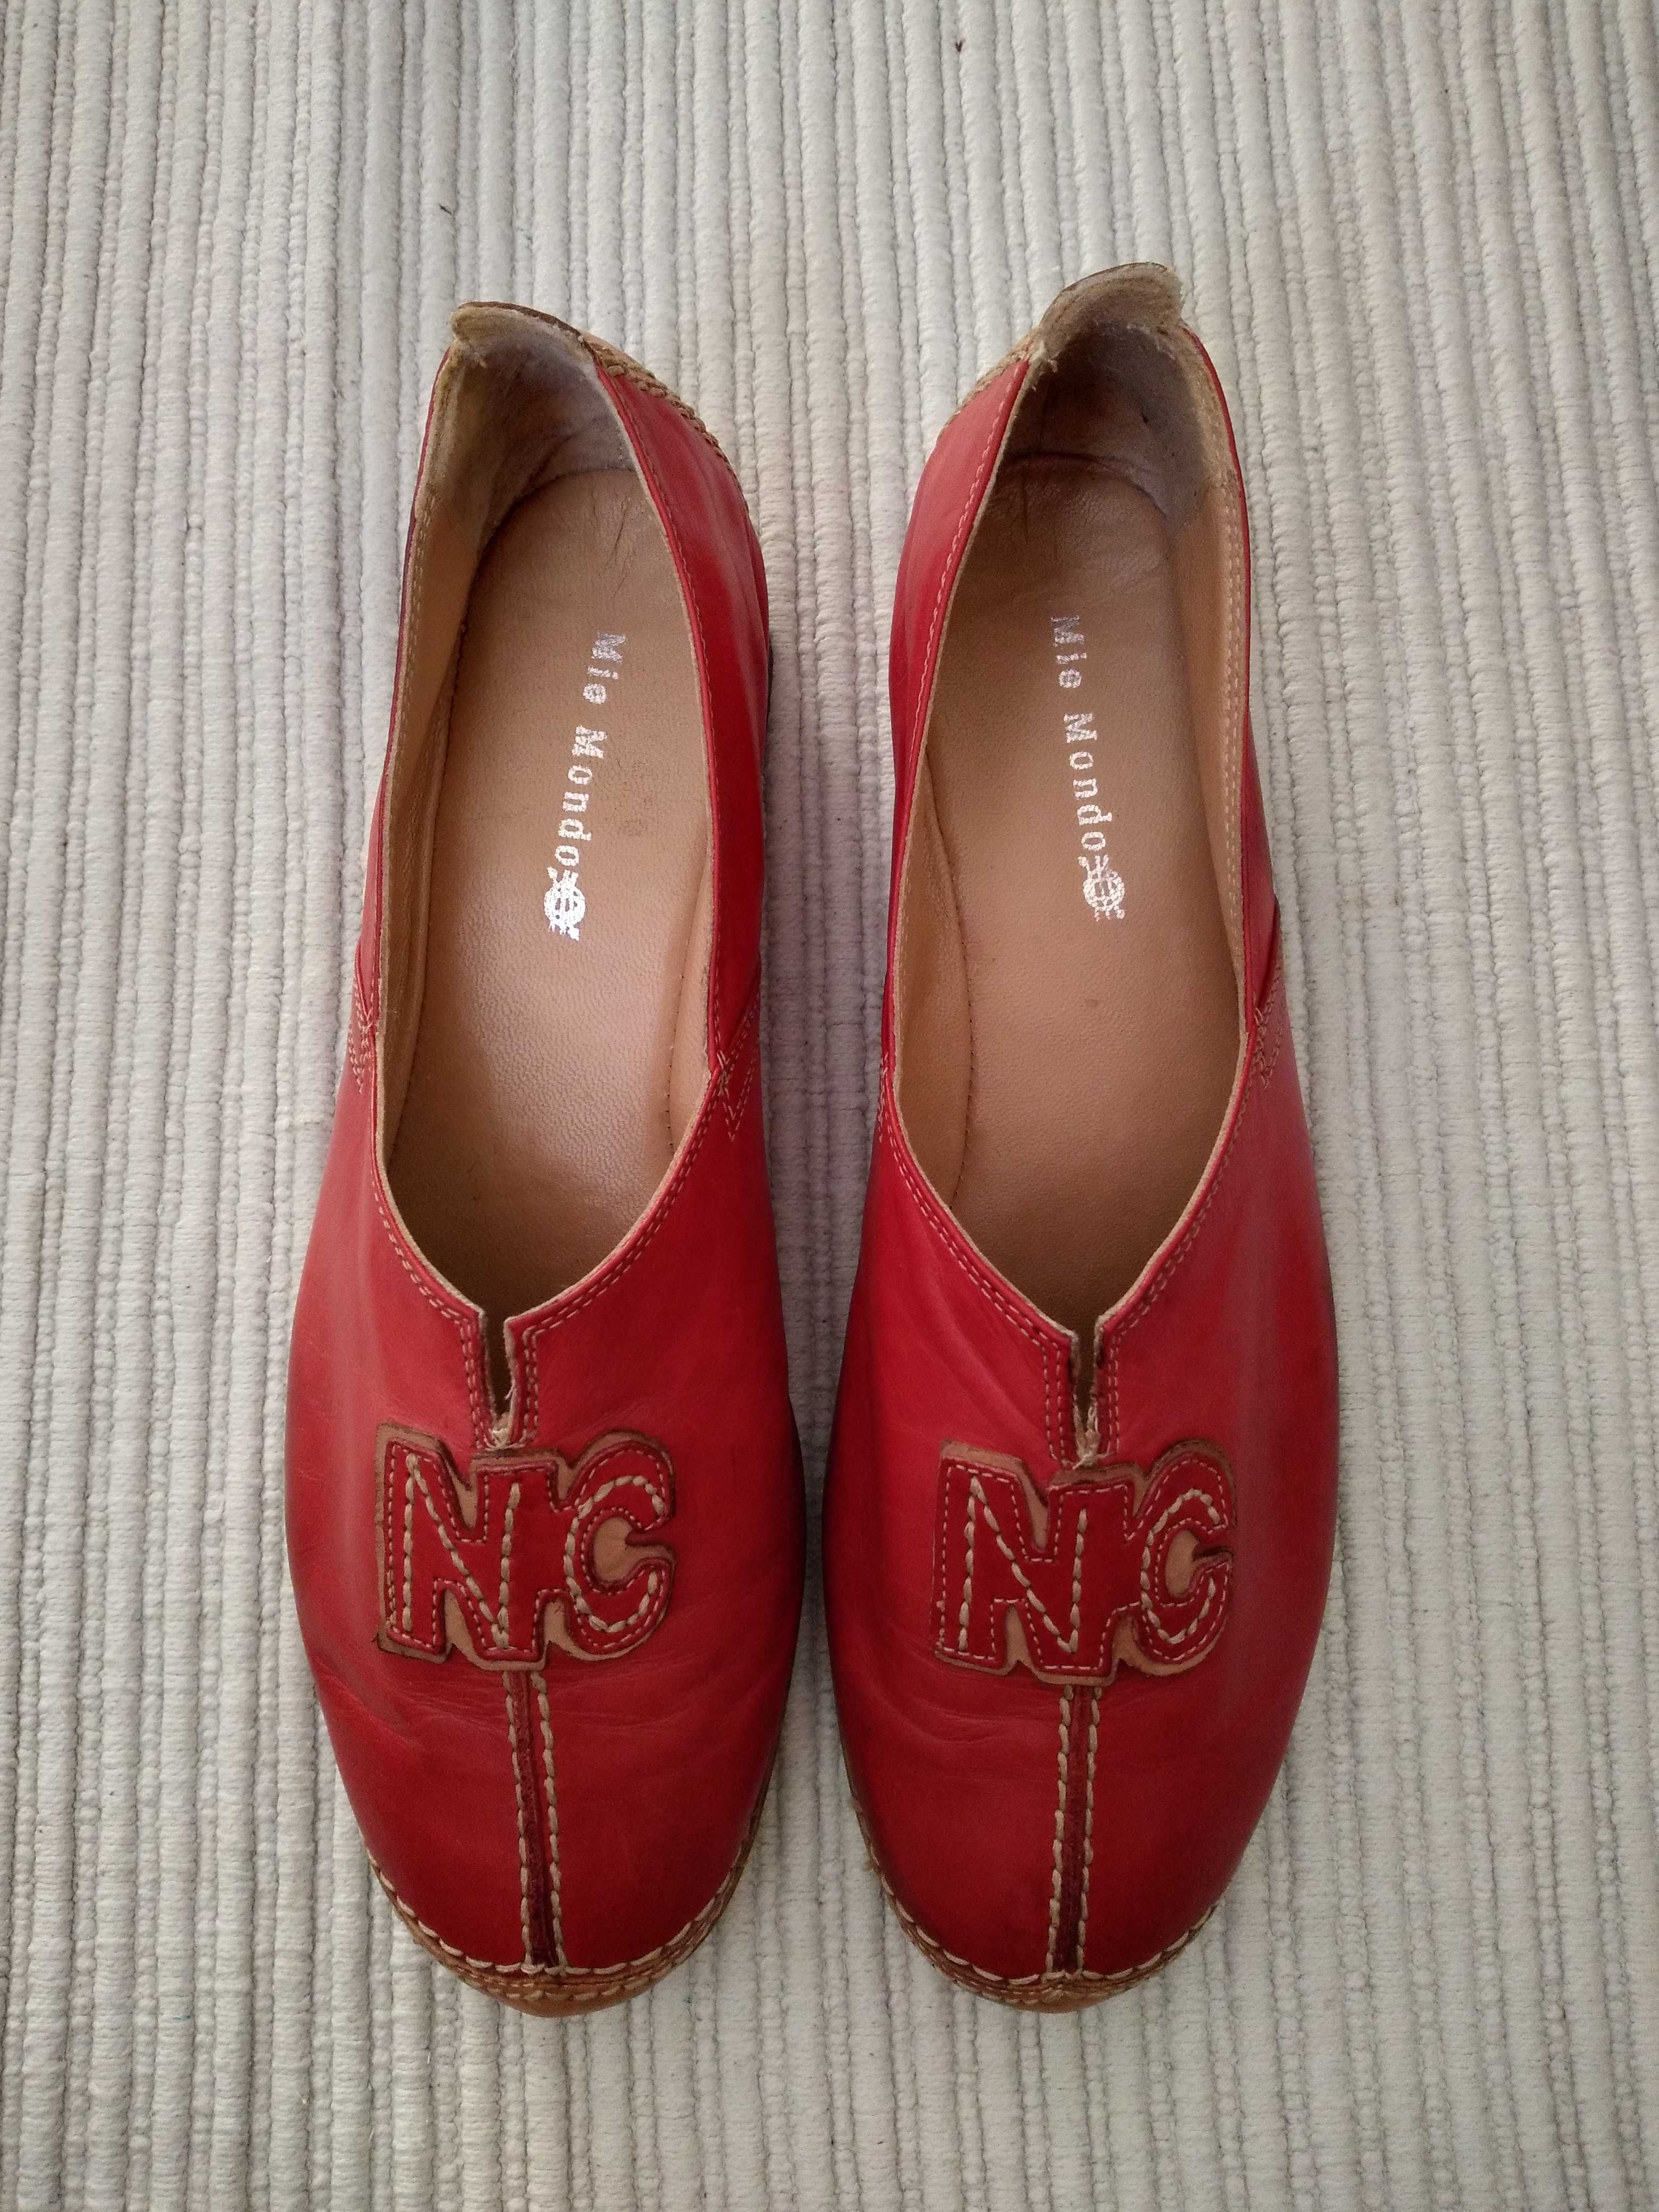 MIO MONDO , buty damskie , 40 , skórzane, czerwone